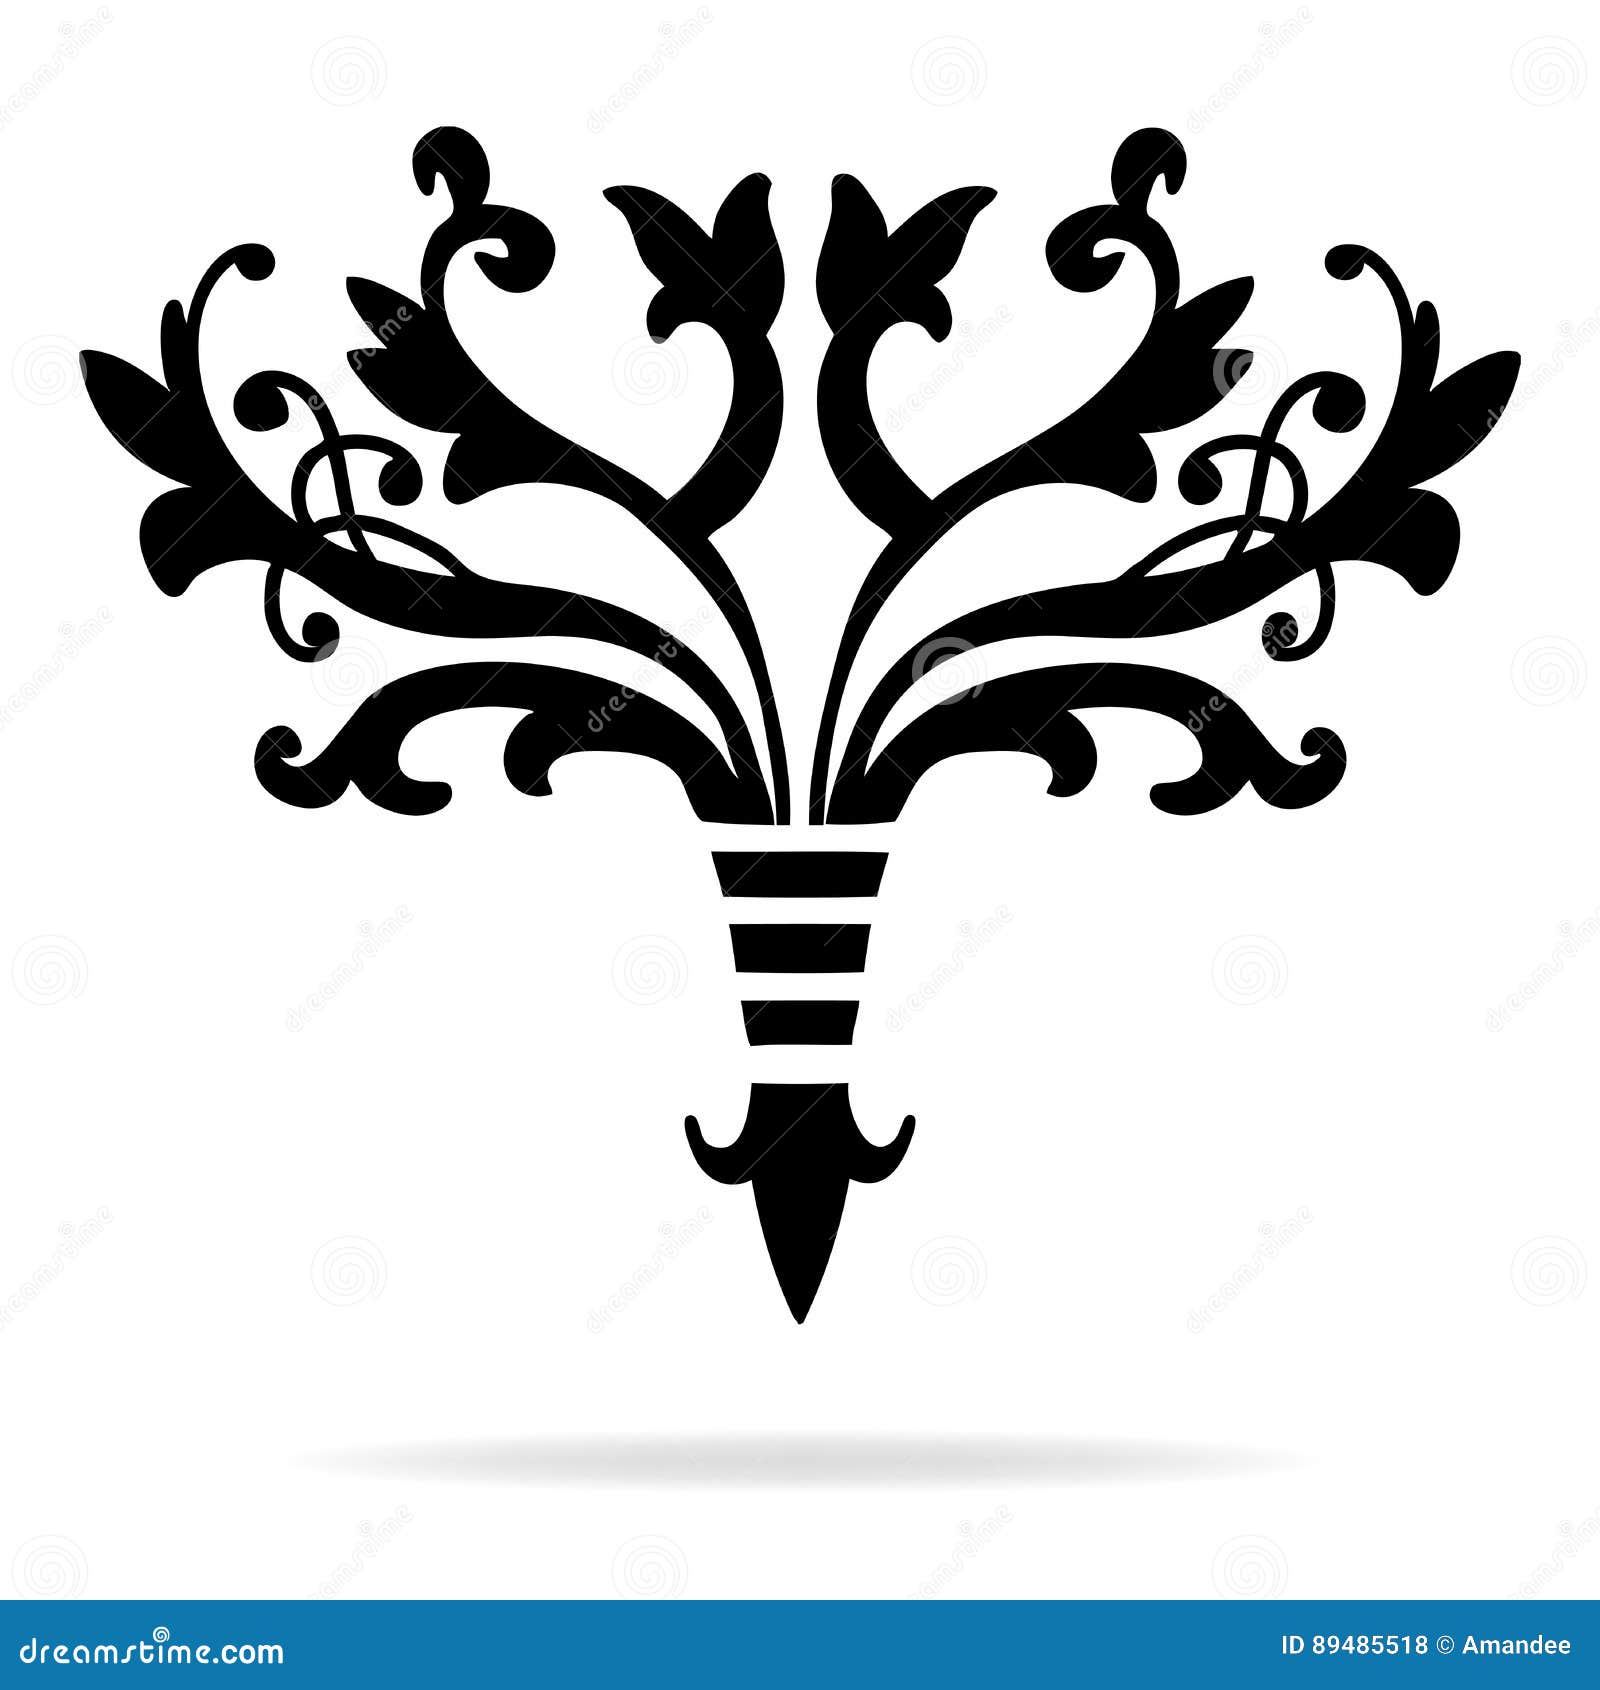 Elegant Symbols Clip Art